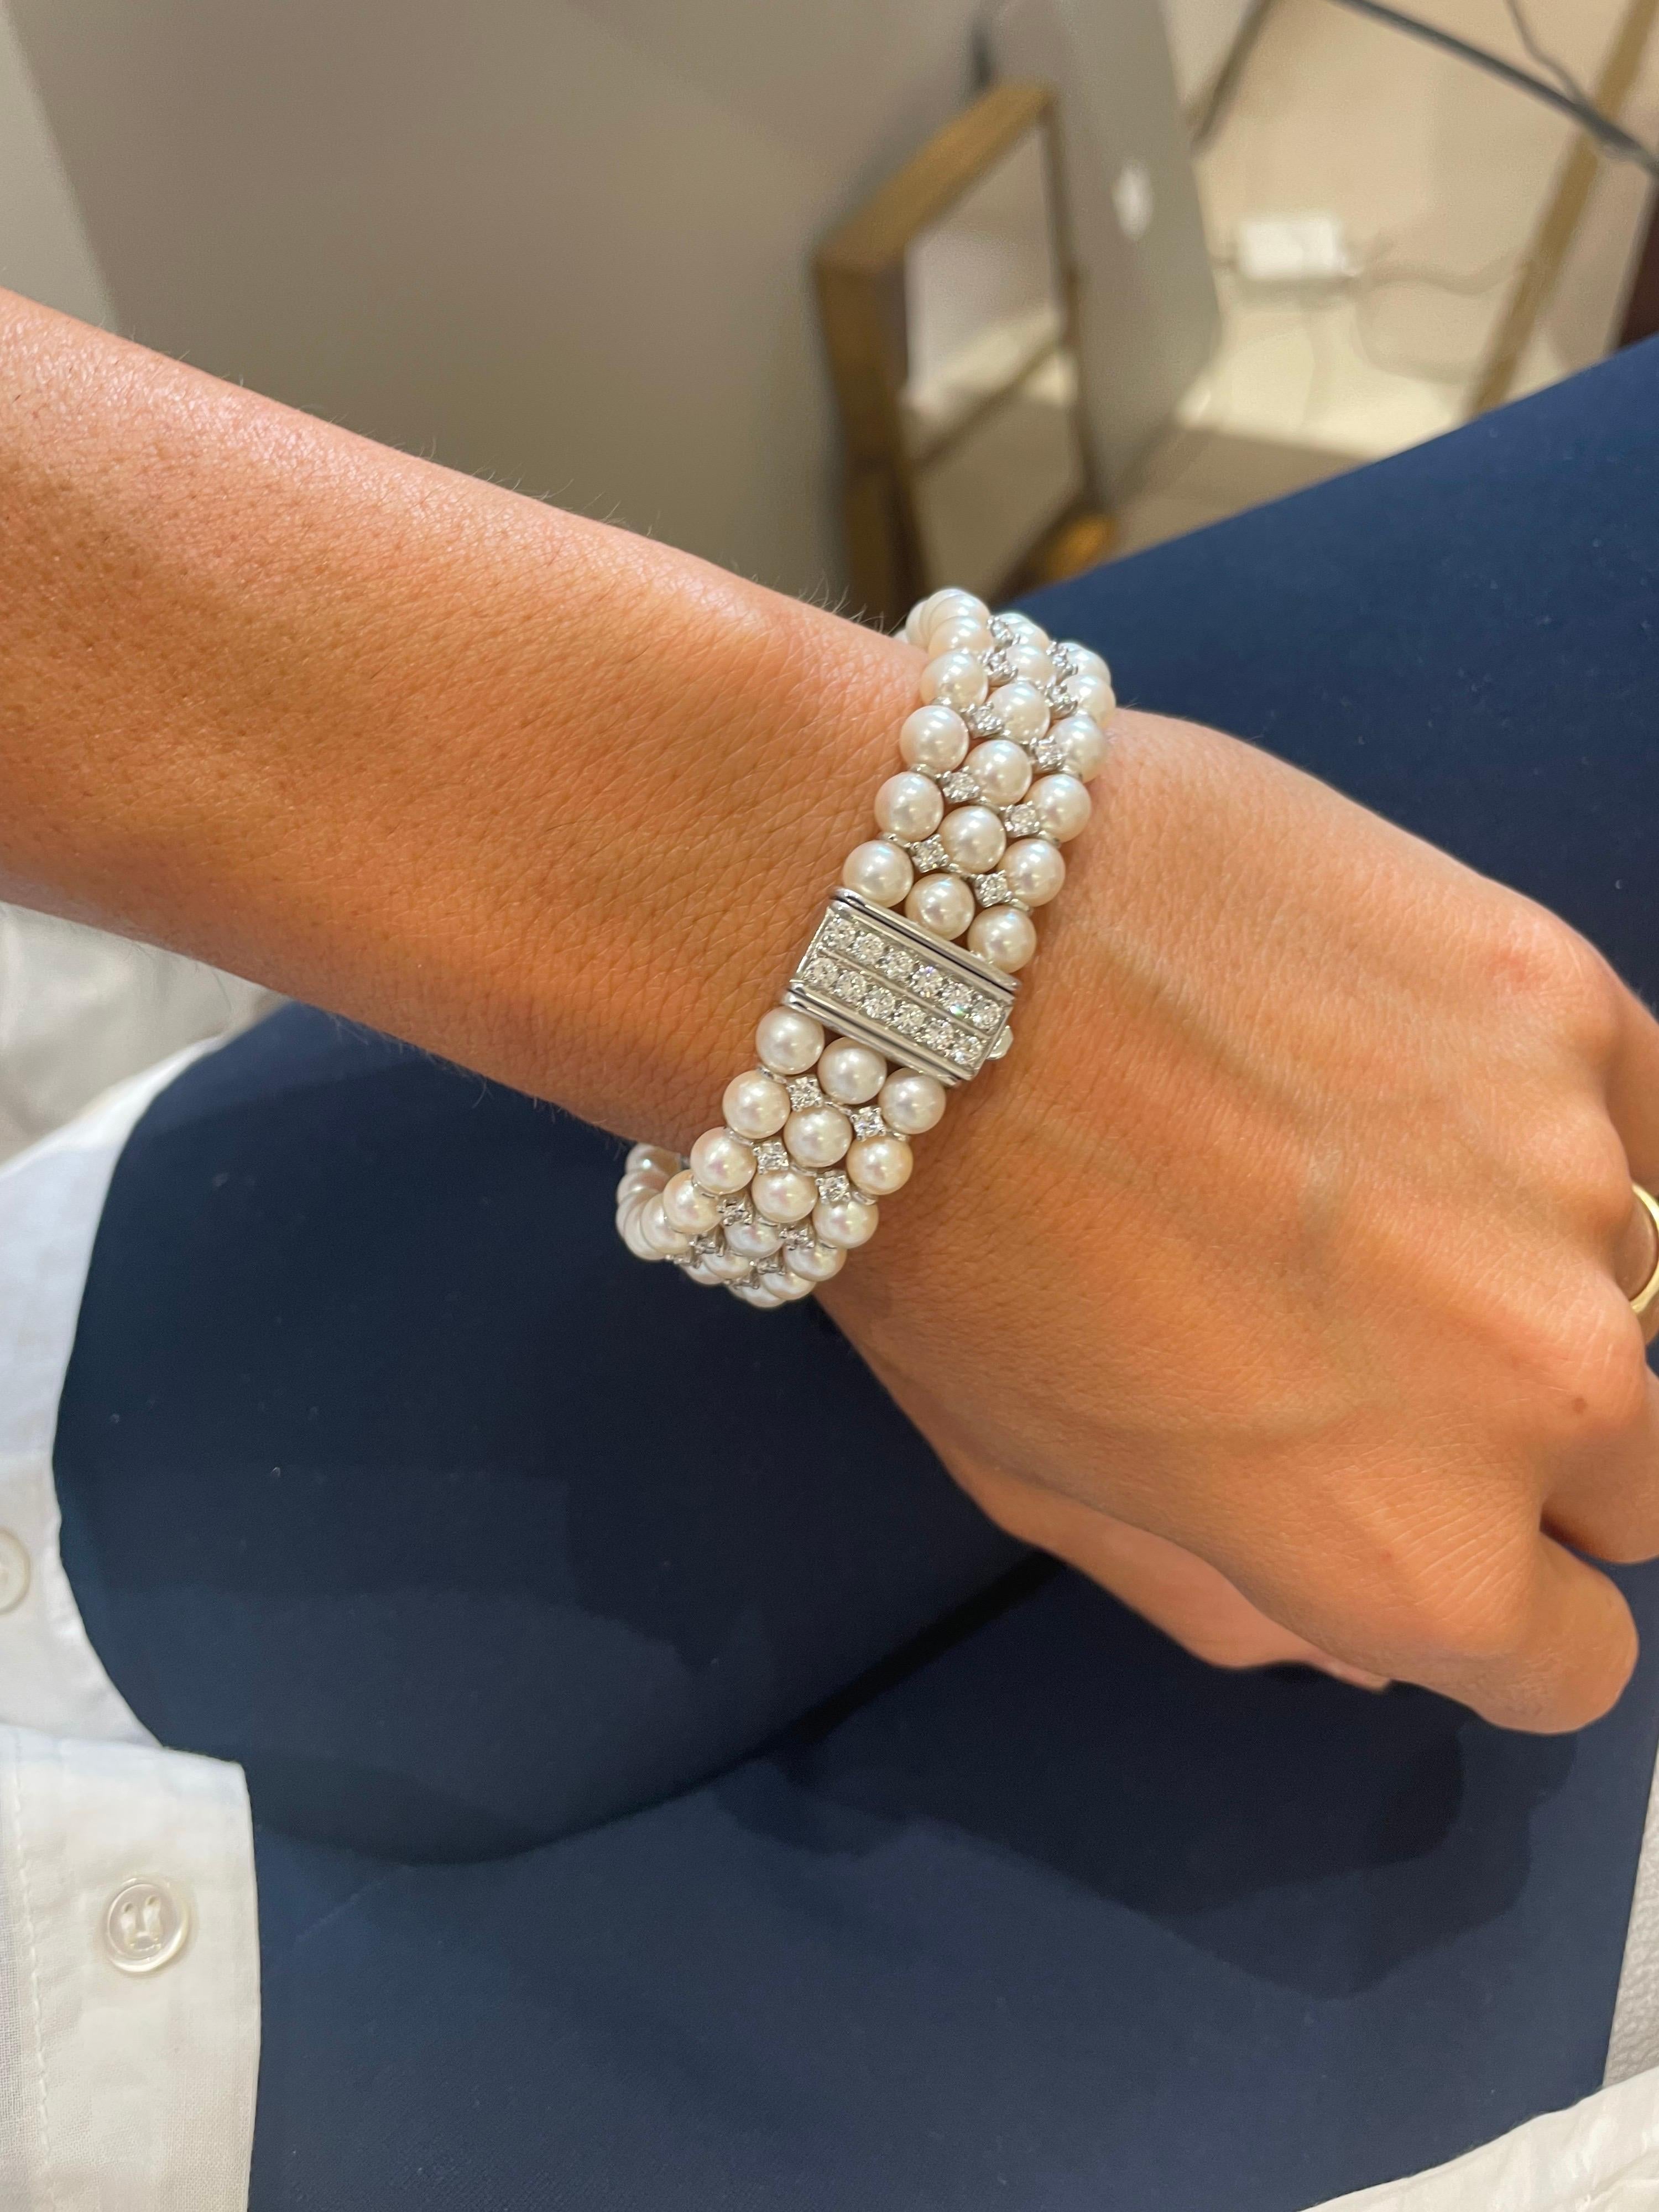 Ce magnifique bracelet en or blanc 18 carats est conçu avec 3 rangs de perles de culture de 5 mm. Les perles alternent avec des diamants ronds et brillants qui ont été sertis à la broche. Le fermoir est serti de 12 diamants ronds brillants, ce qui